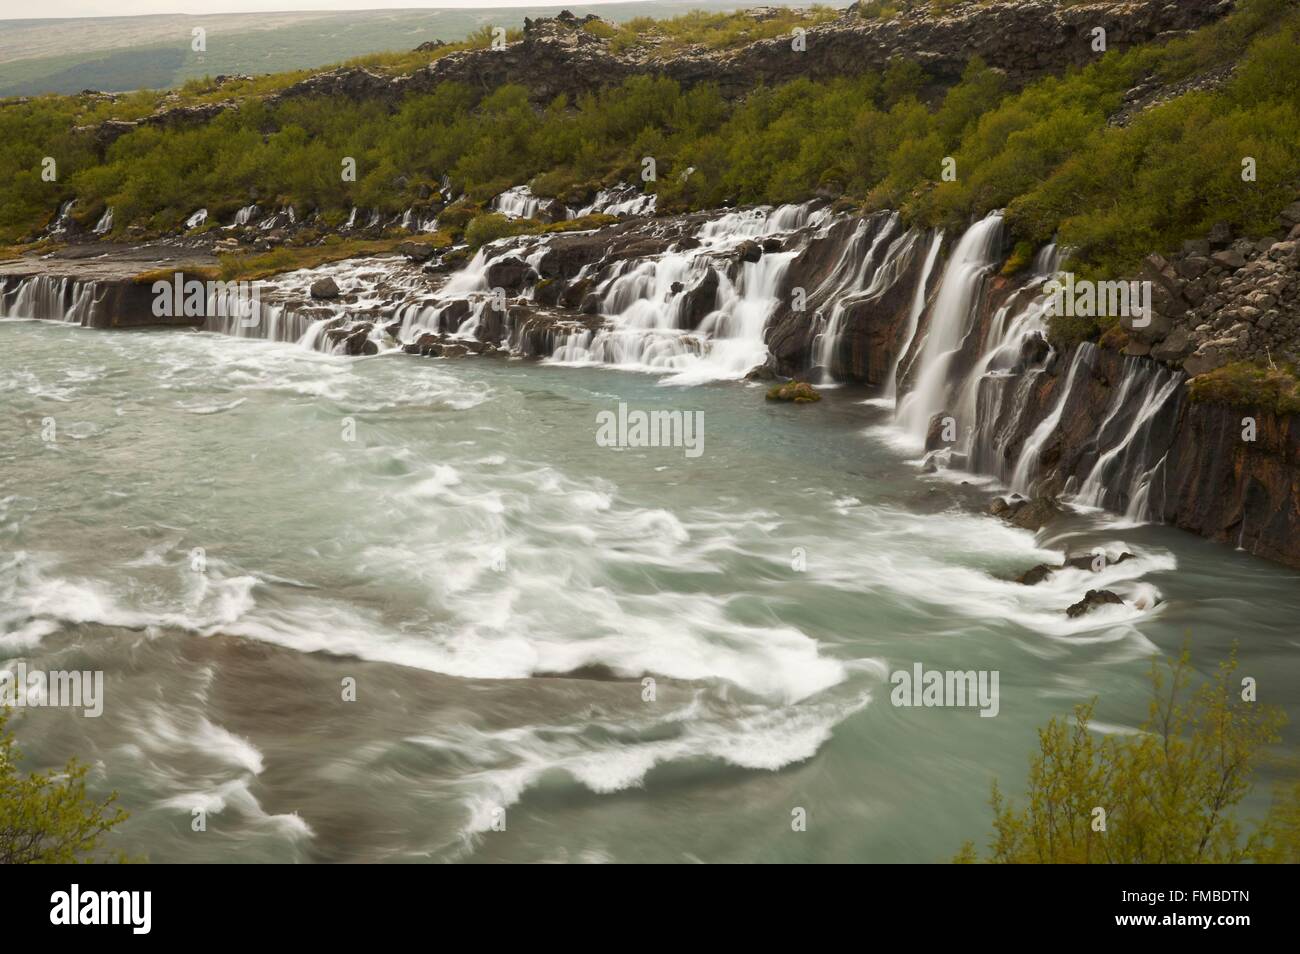 Iceland, West, waterfalls Hraunfossar and Barnafoss Stock Photo